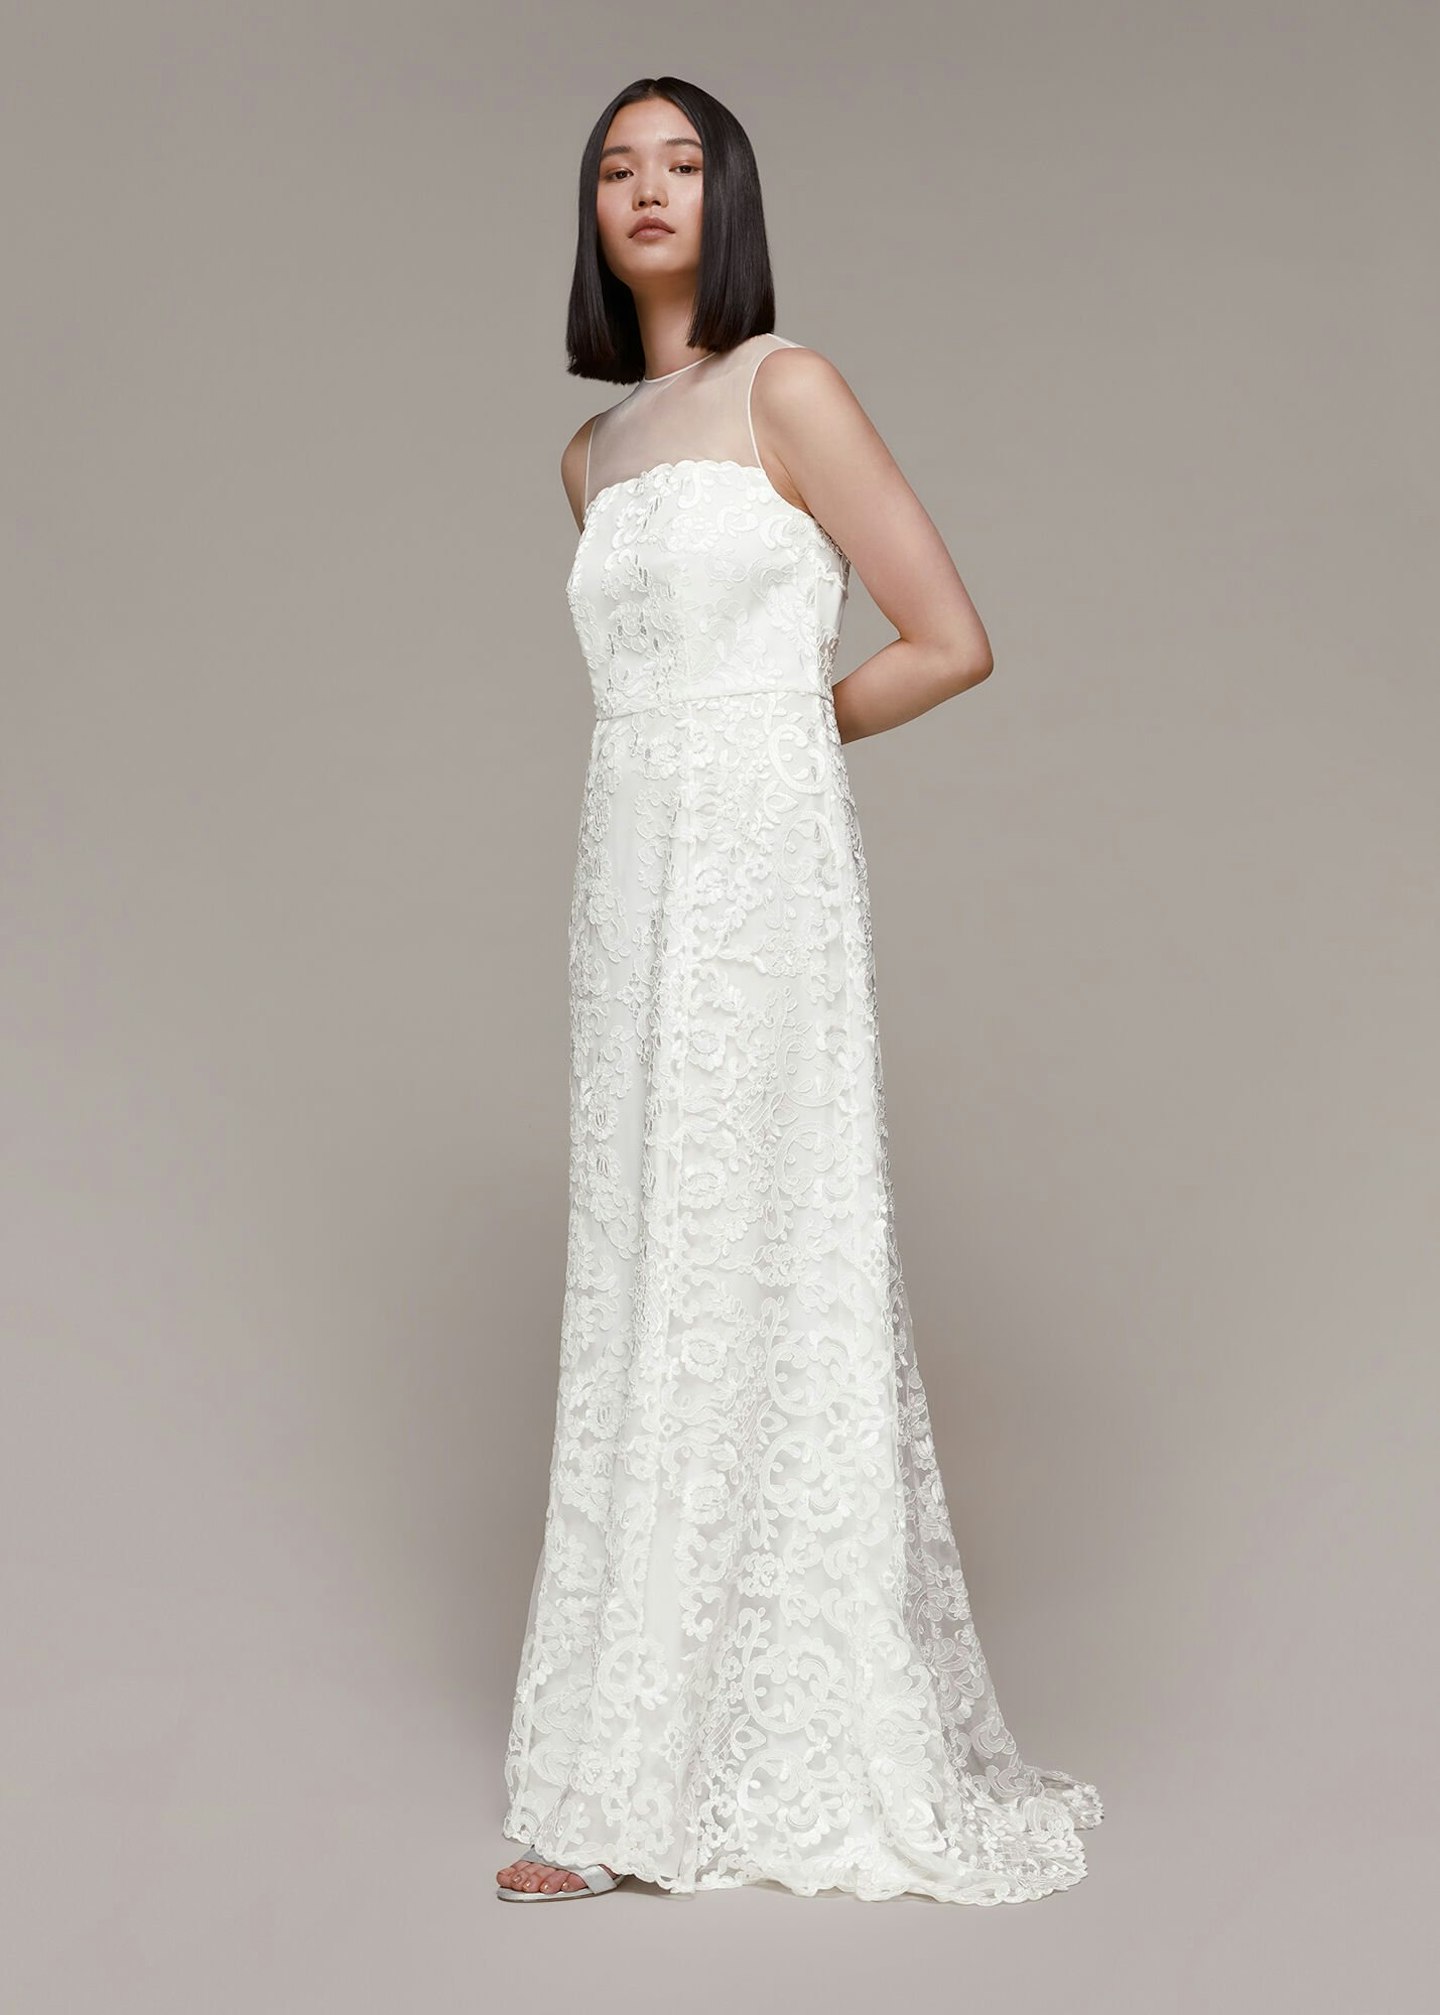 Stunning Wedding Dresses, Embellished, Maxi & Lace, Phase Eight